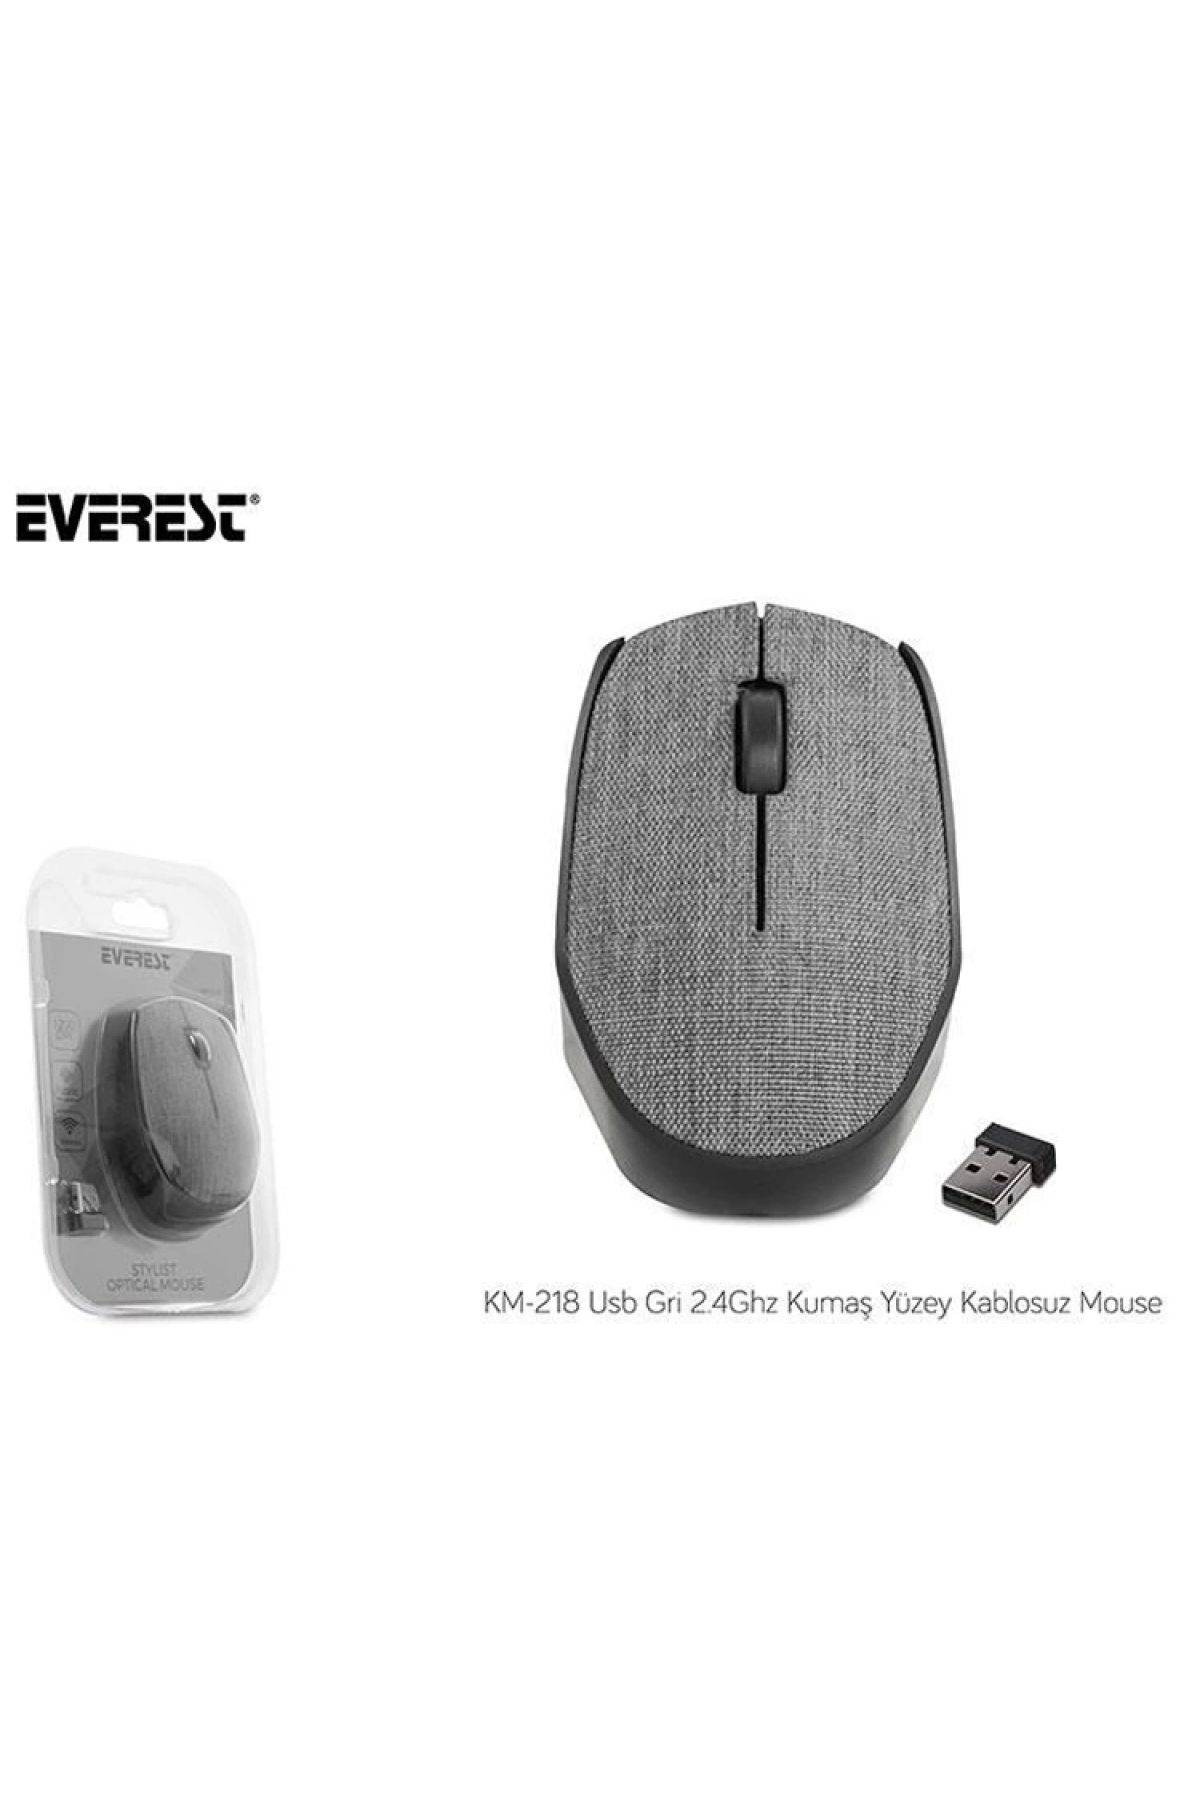 Everest Km-218 2.4ghz Kablosuz Usb Mouse Gri Kumaş Yüzey Nano Alıcılı Scroll Tuşlu